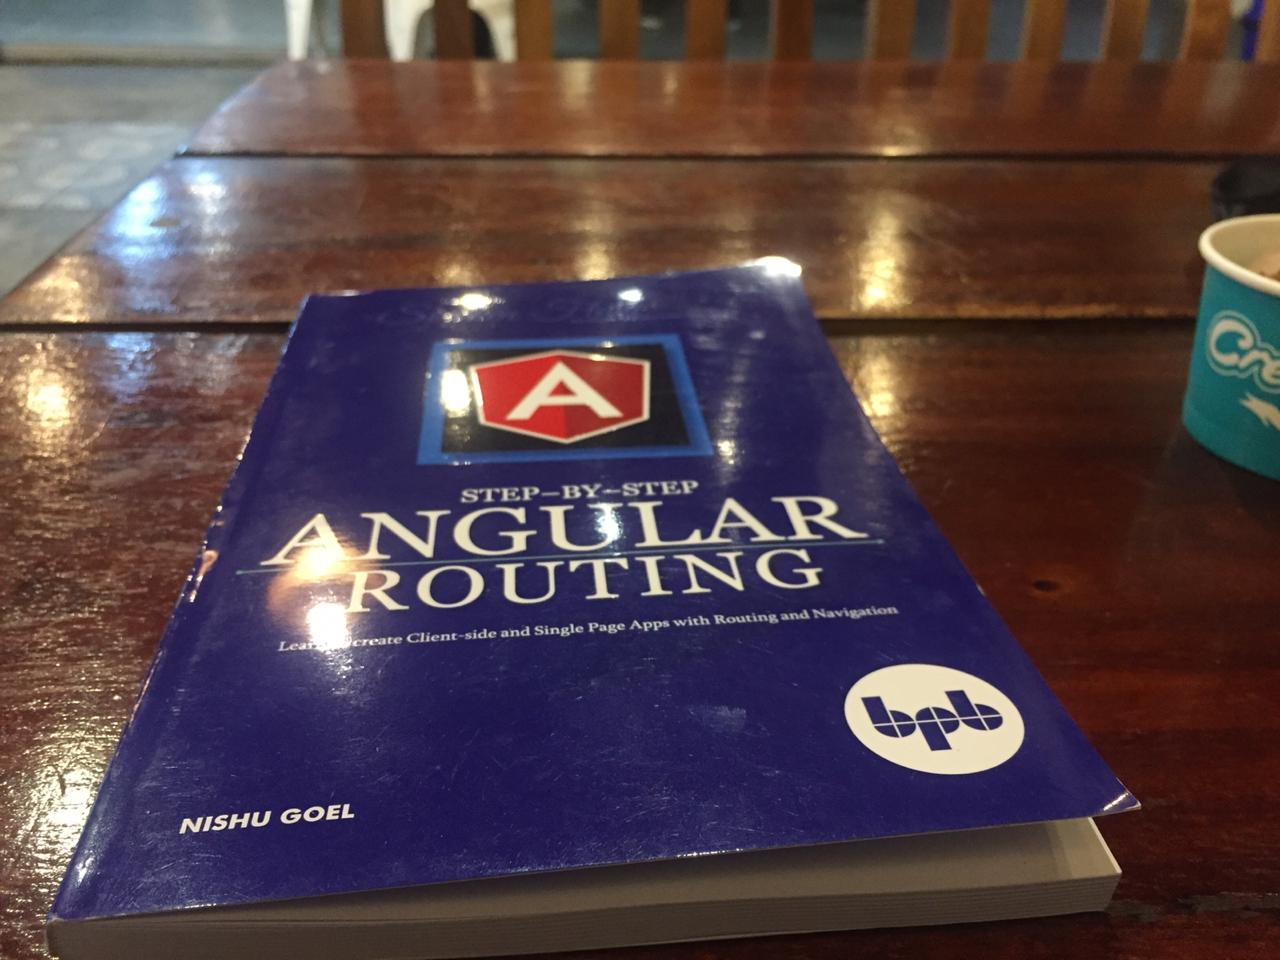 Il libro Angular Routing su una tabella.